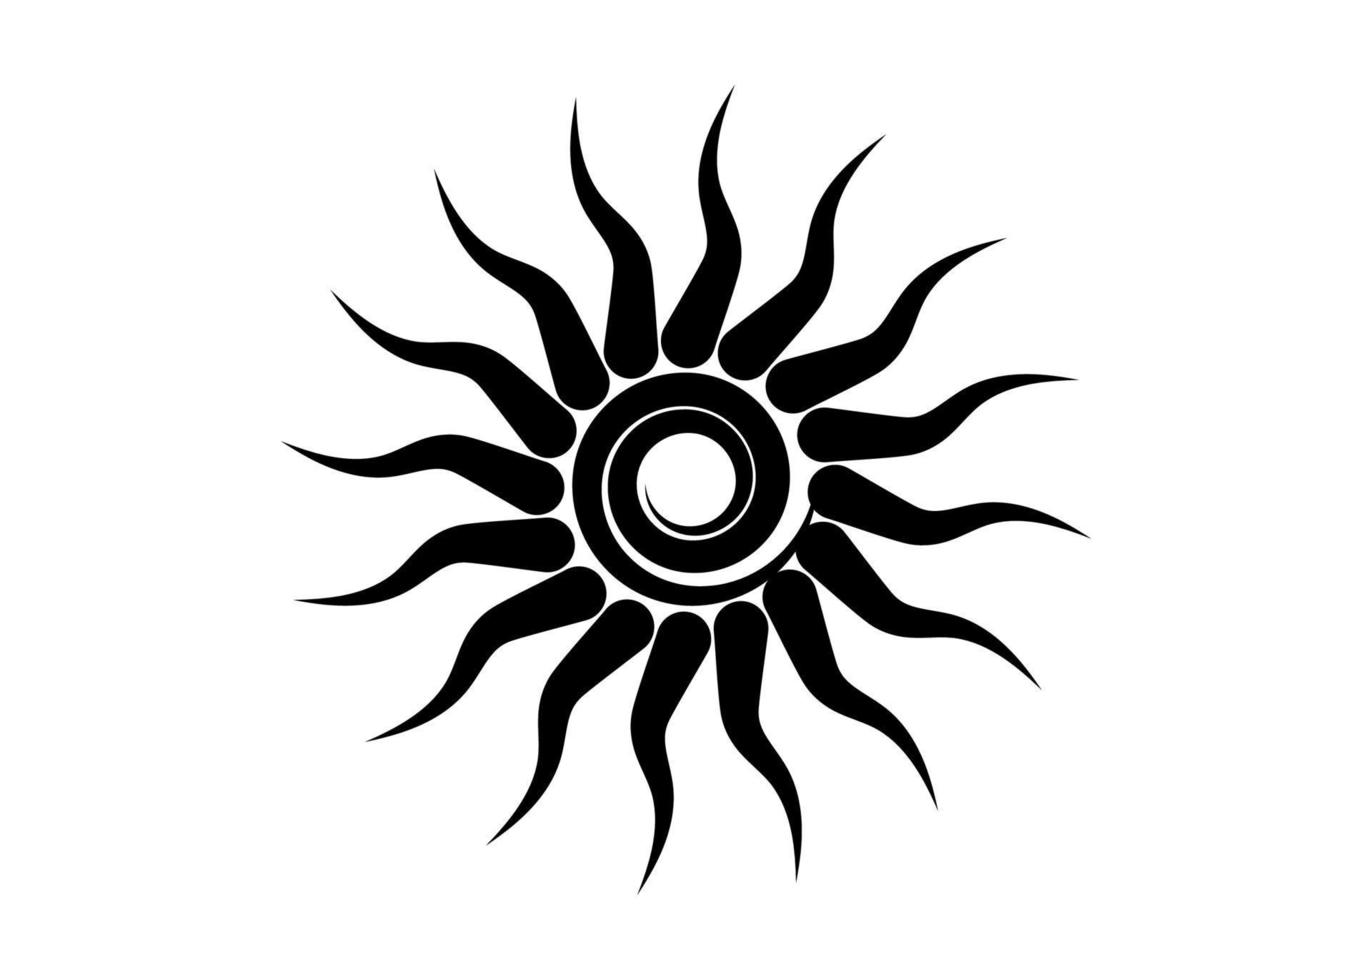 black tribal sun tattoo sonnenrad symbol, sun wheel sign. Sommer-Symbol. das alteuropäische esoterische element. logo grafisches element spiralform. Vektordesign isoliert oder weißer Hintergrund vektor